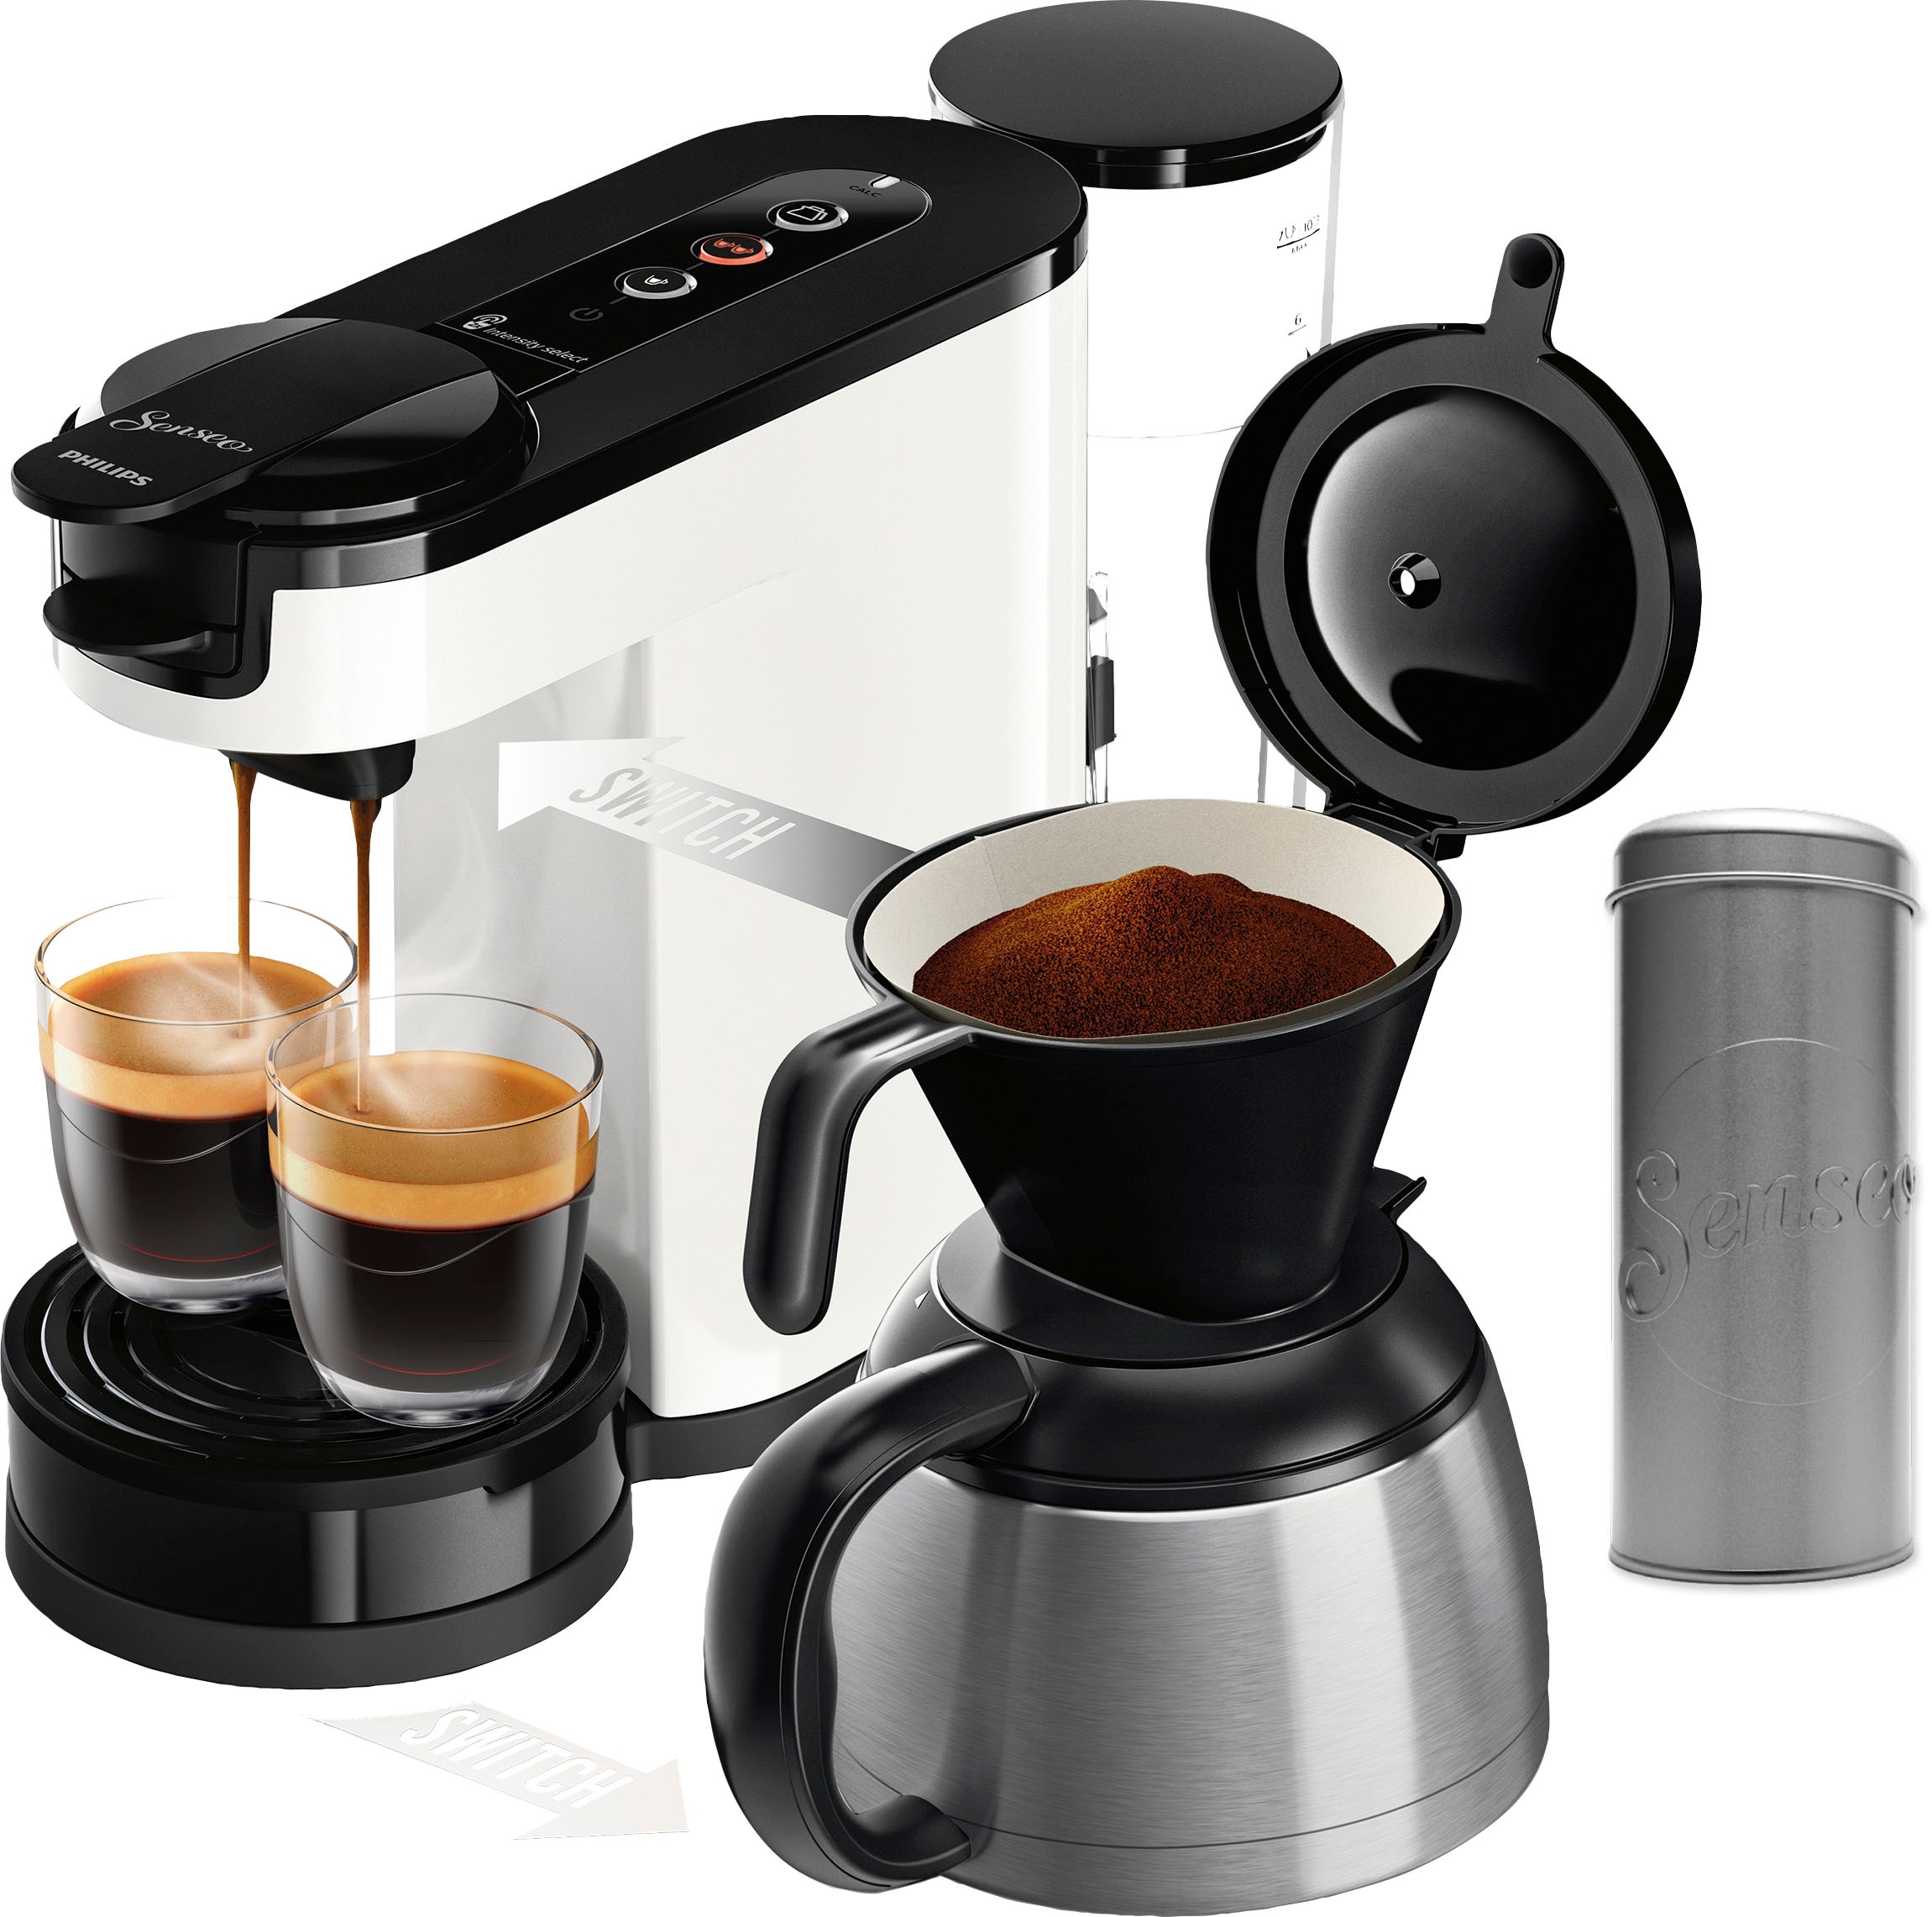 Philips Senseo Kaffeepadmaschine "Switch HD6592/04", 1 l Kaffeekanne, inkl. Kaffeepaddose im Wert von 9,90 € UVP